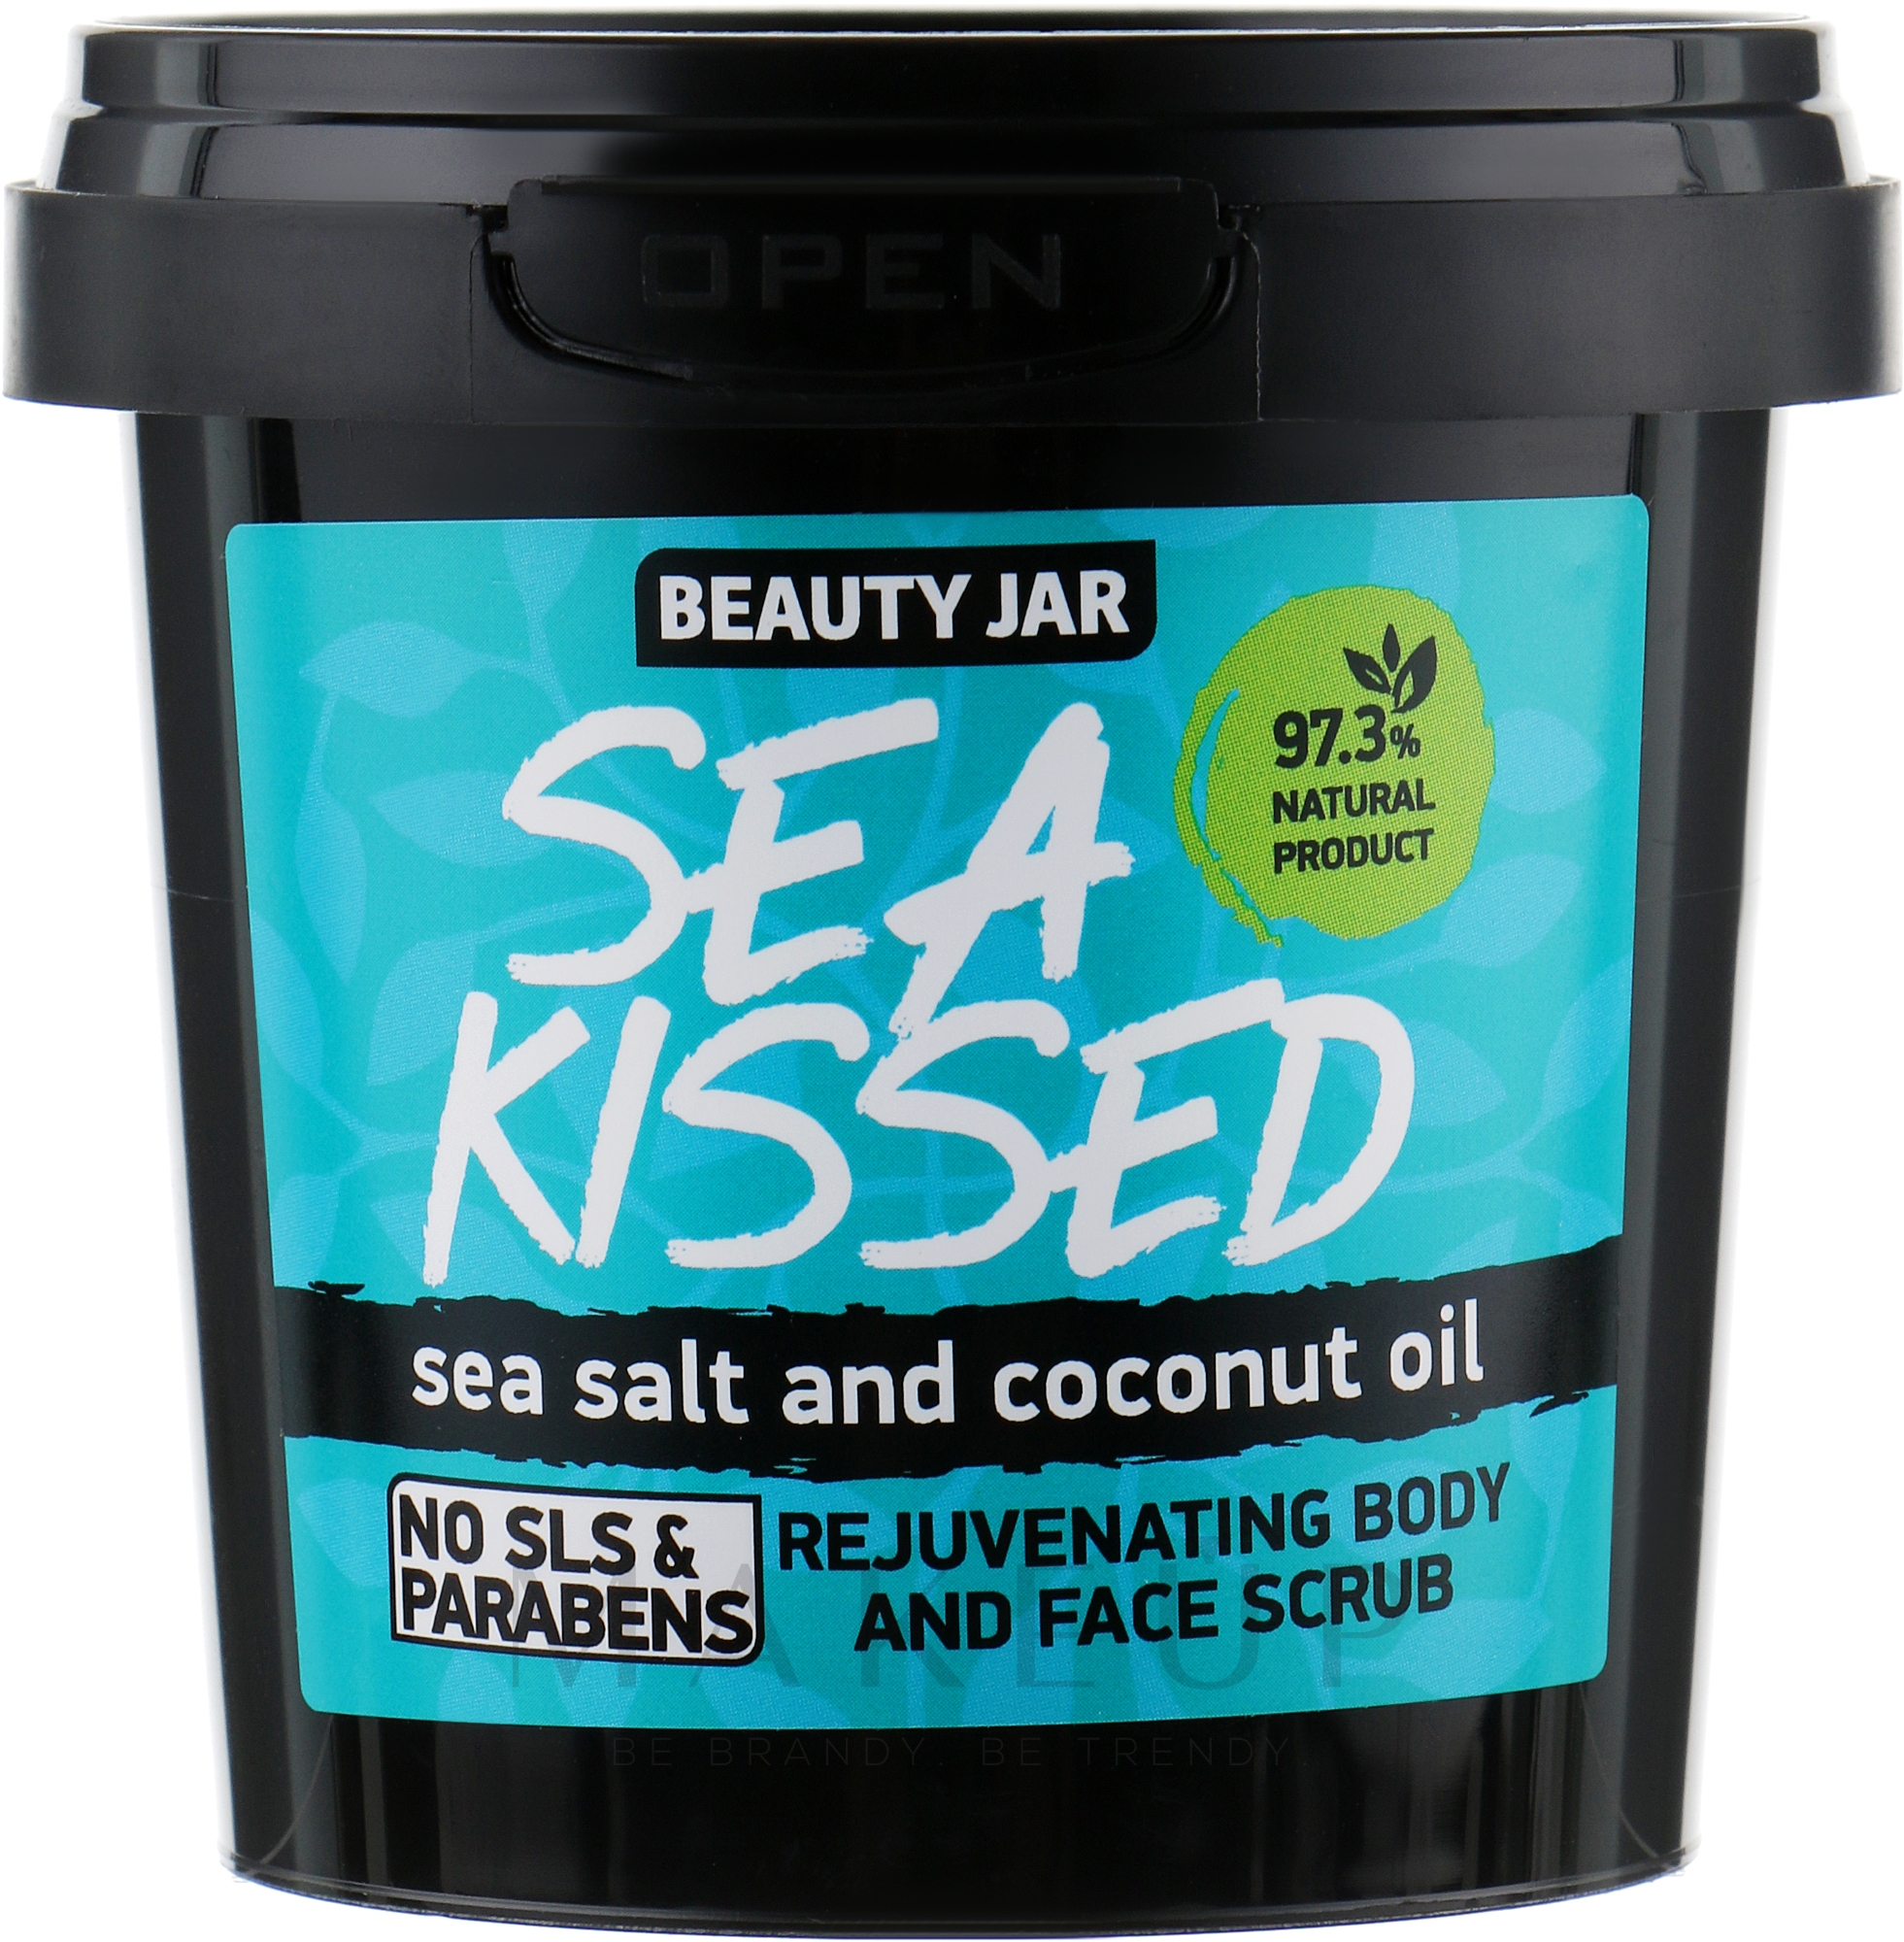 Regenerierendes Gesichts- und Körperpeeling mit Meersalz und Kokosnussöl - Beauty Jar Rejuvenating Body And Face Scrub — Foto 200 g